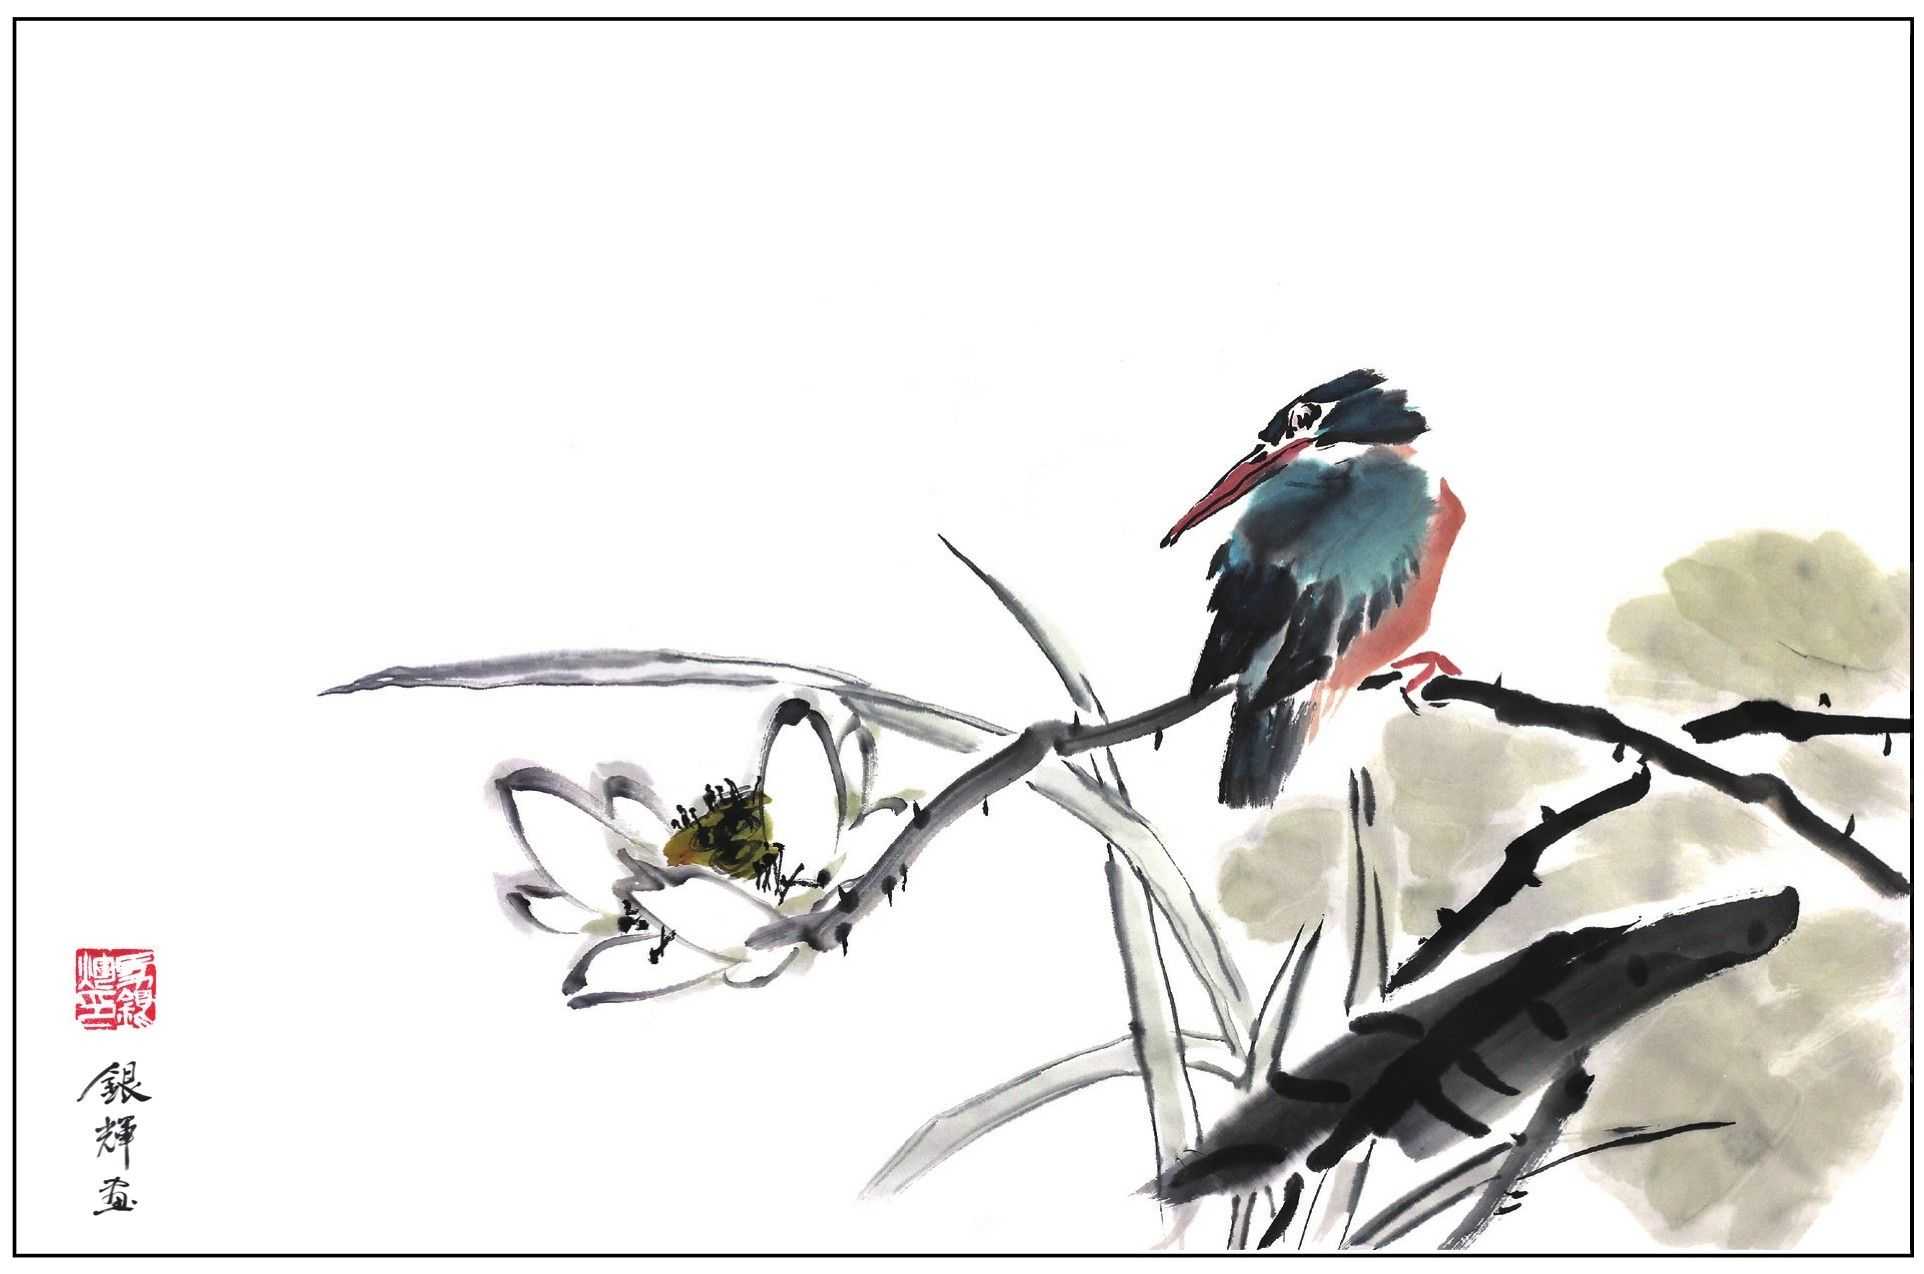 零基础花鸟画教程分步骤讲解3种常见禽鸟画法简单易学收藏